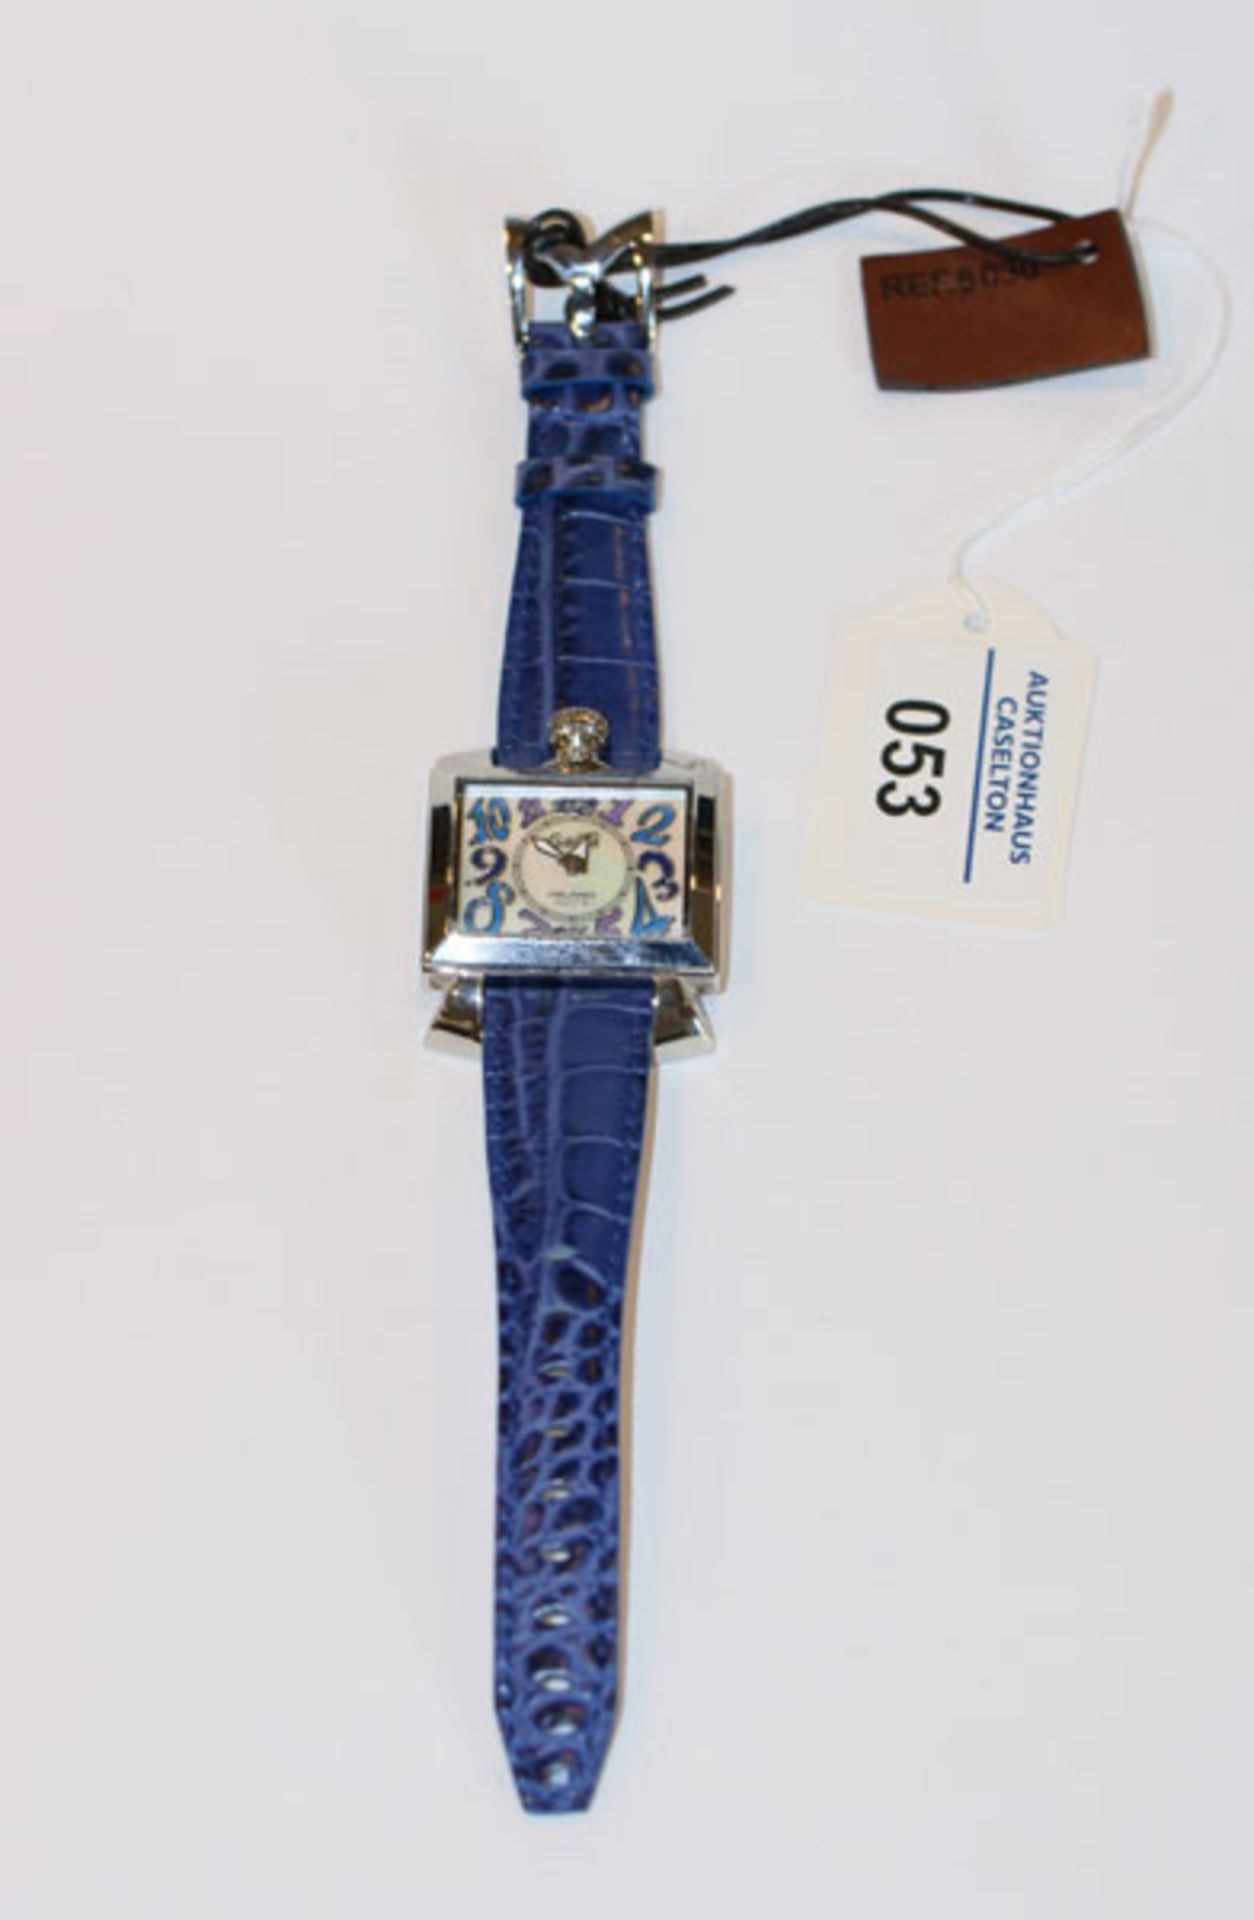 GaGa Milano Damen Armbanduhr mit blauen Ziffern und Armband, rückseitig mit graviertem Wappendekor